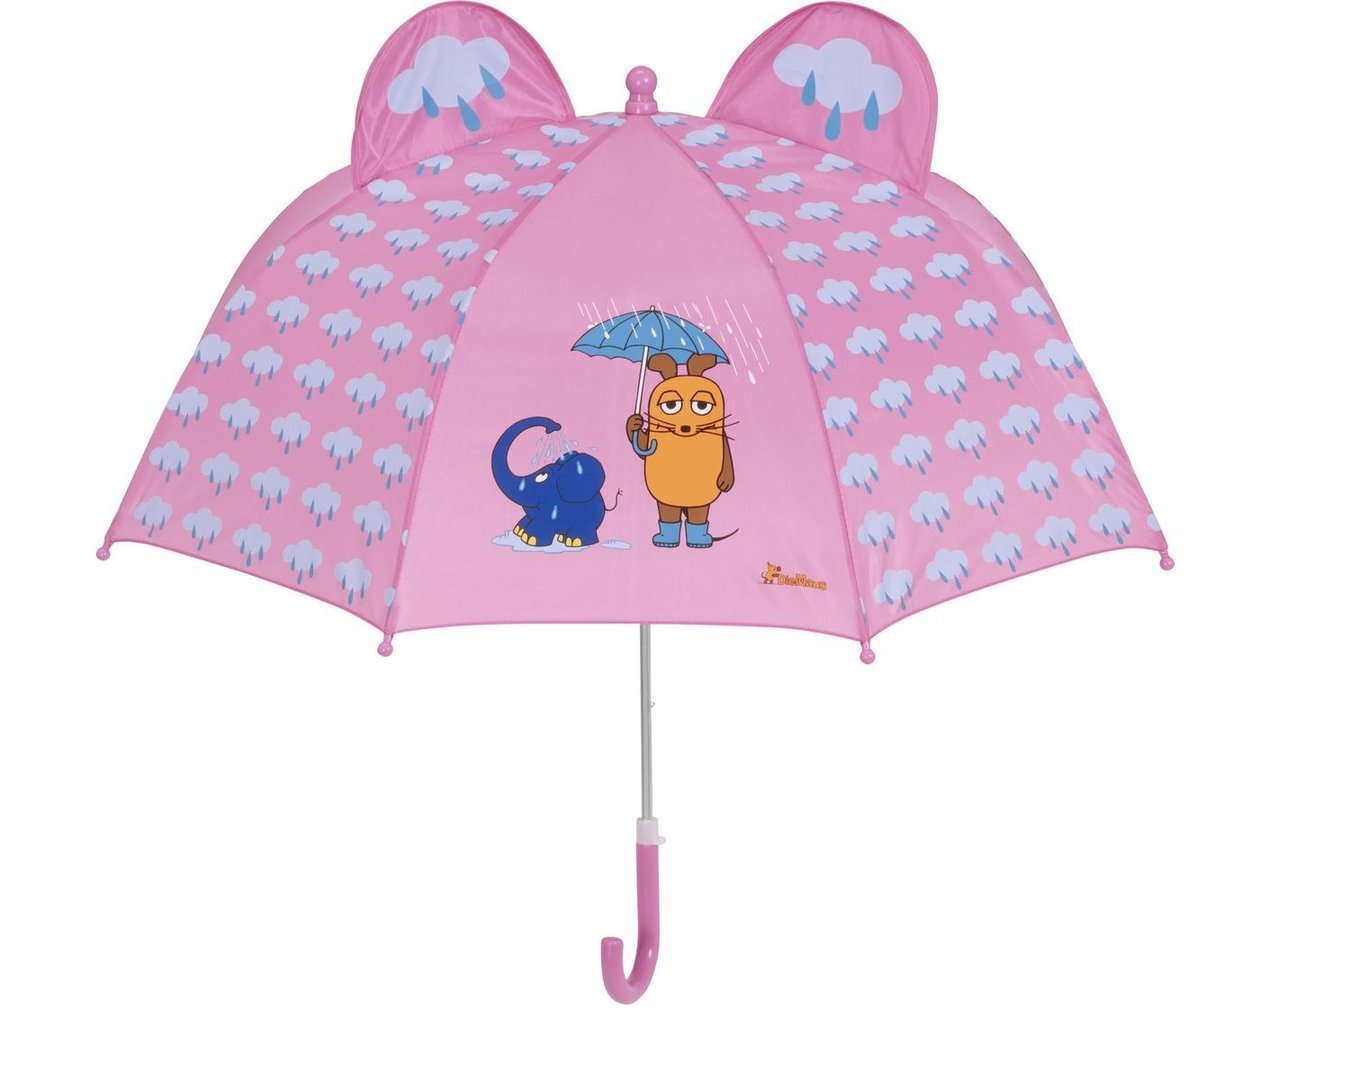 Playshoes Mädchen Sterne Regenschirm 